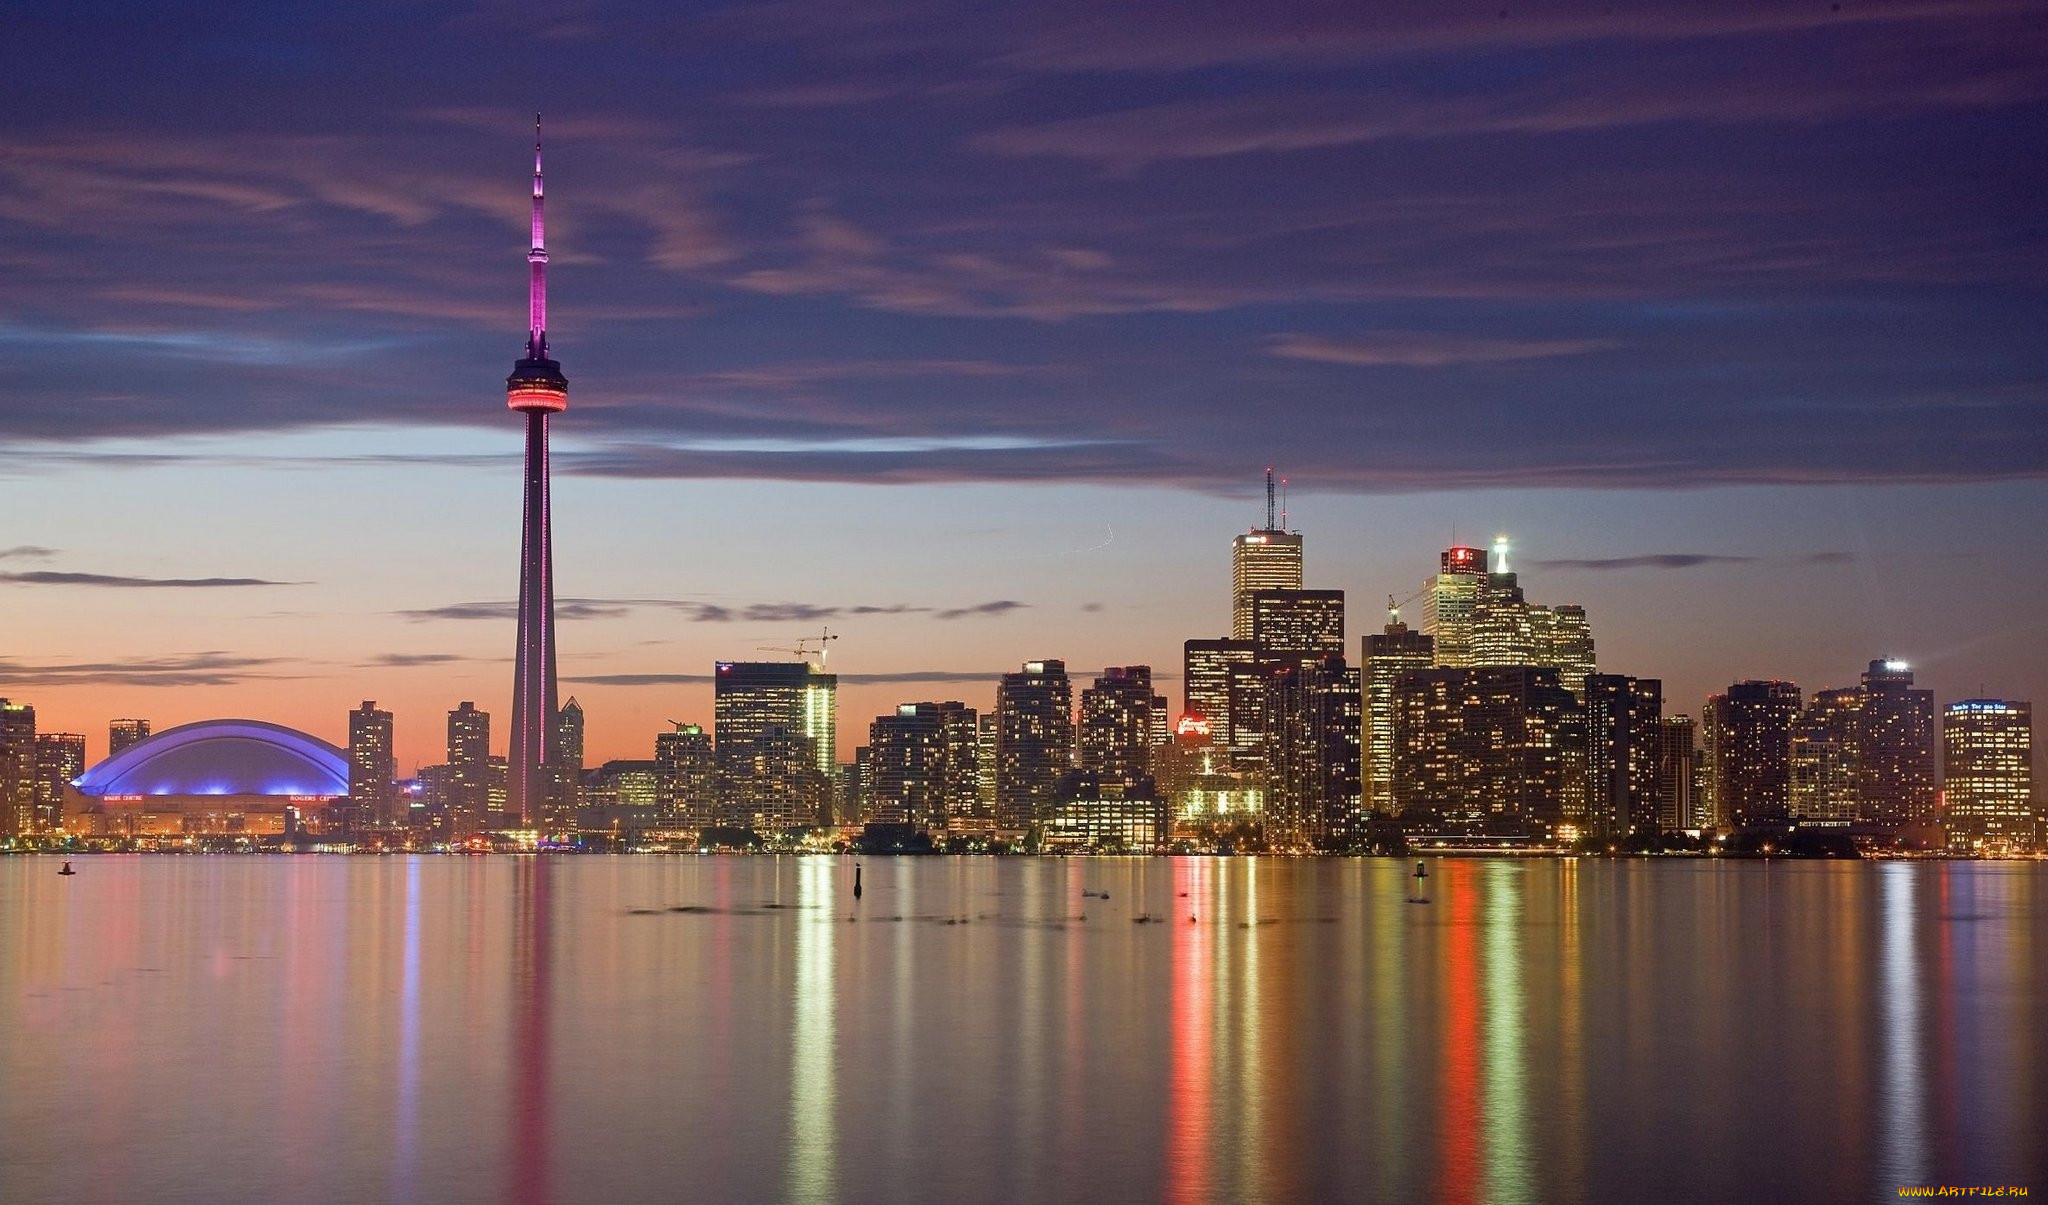 Обои Города Торонто (Канада), обои для рабочего стола, фотографии ... Канада Обои